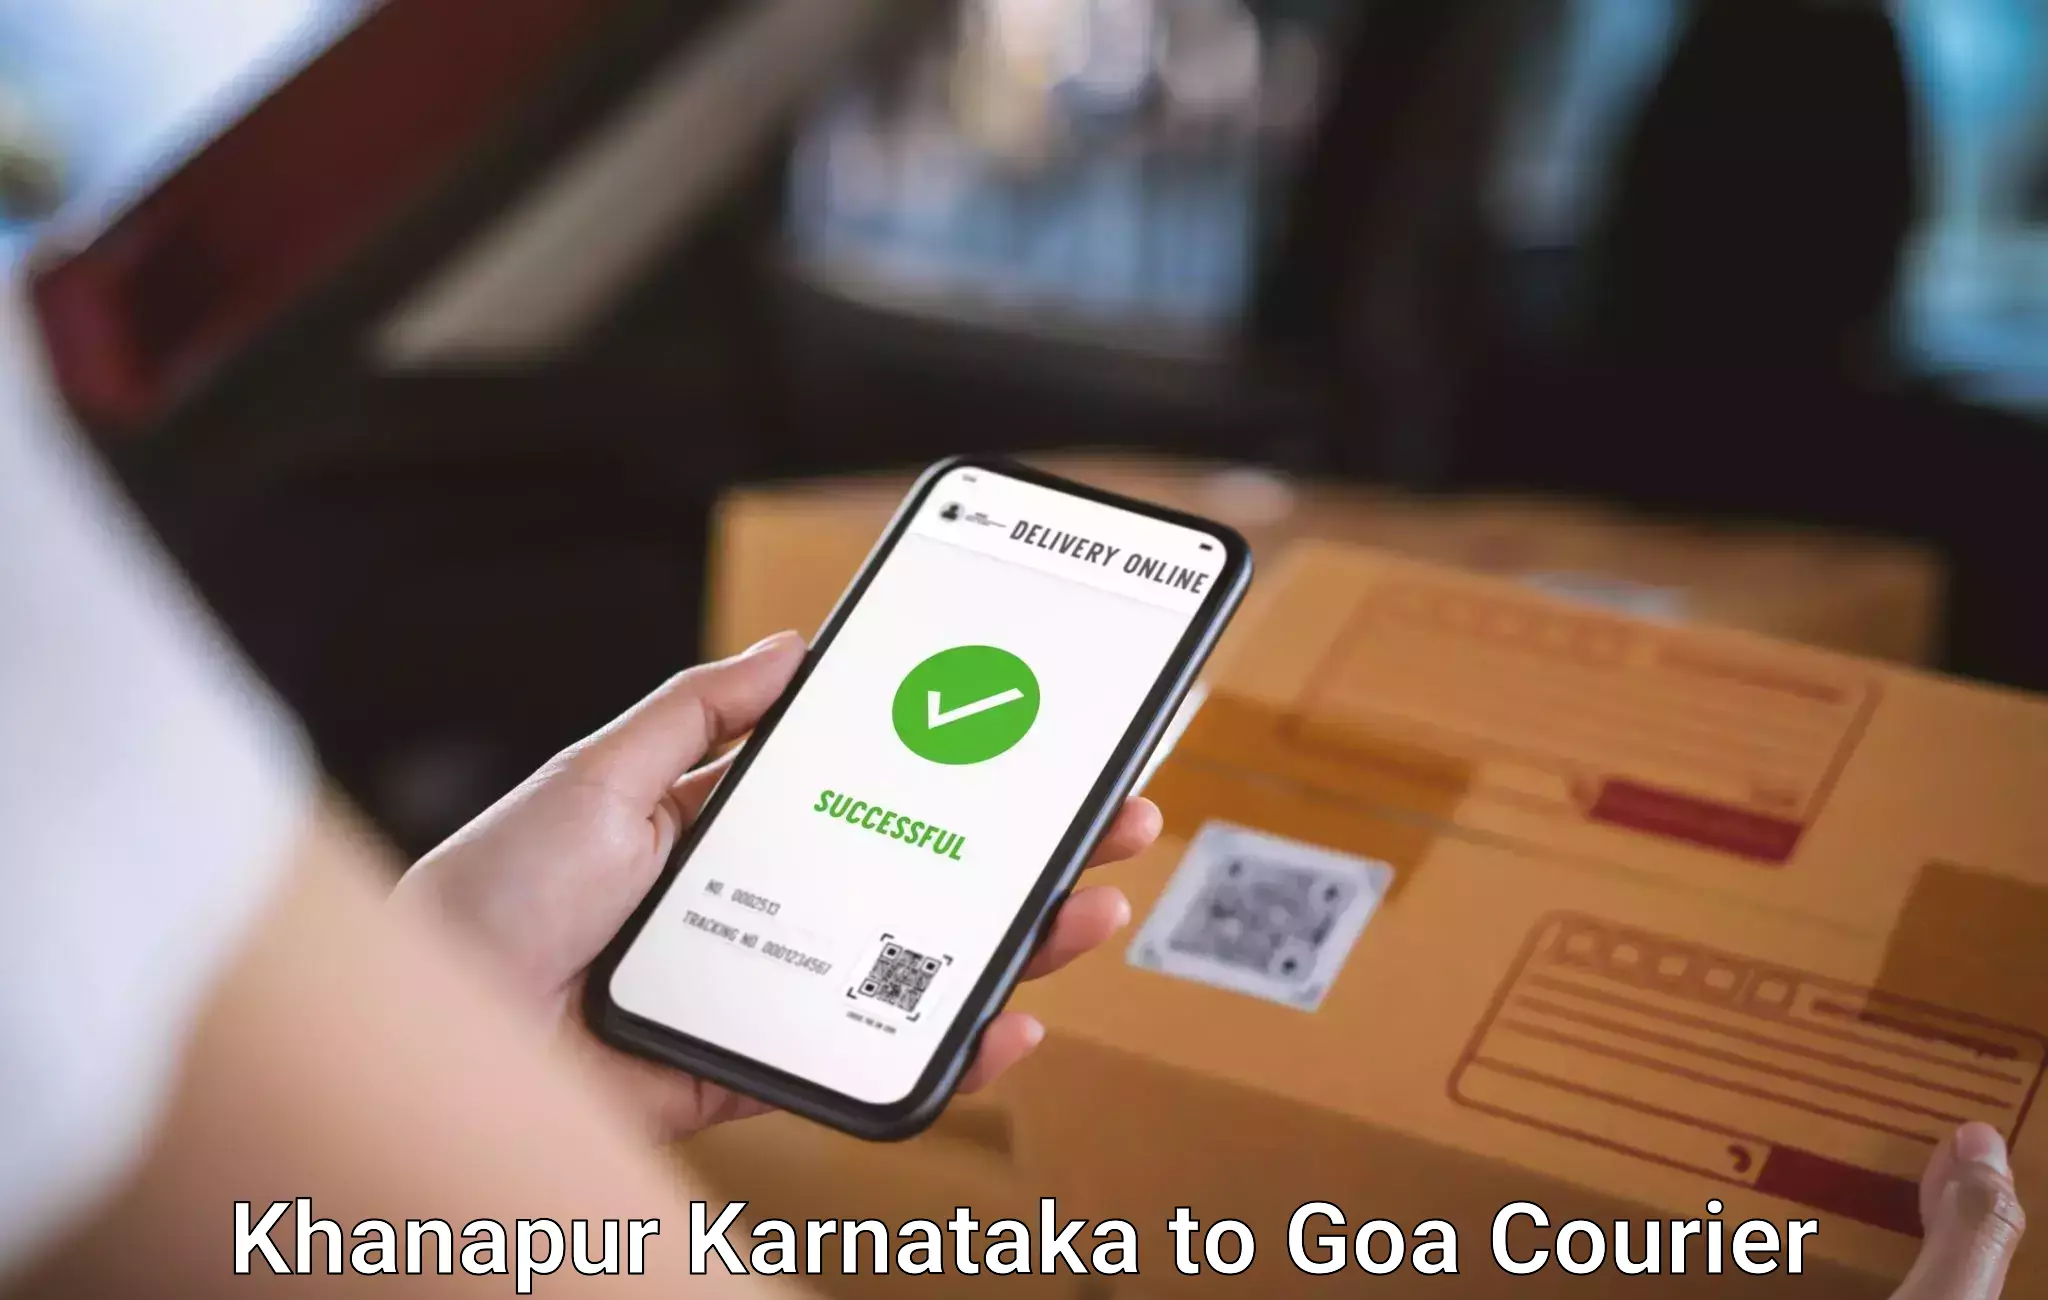 Automated luggage transport Khanapur Karnataka to NIT Goa